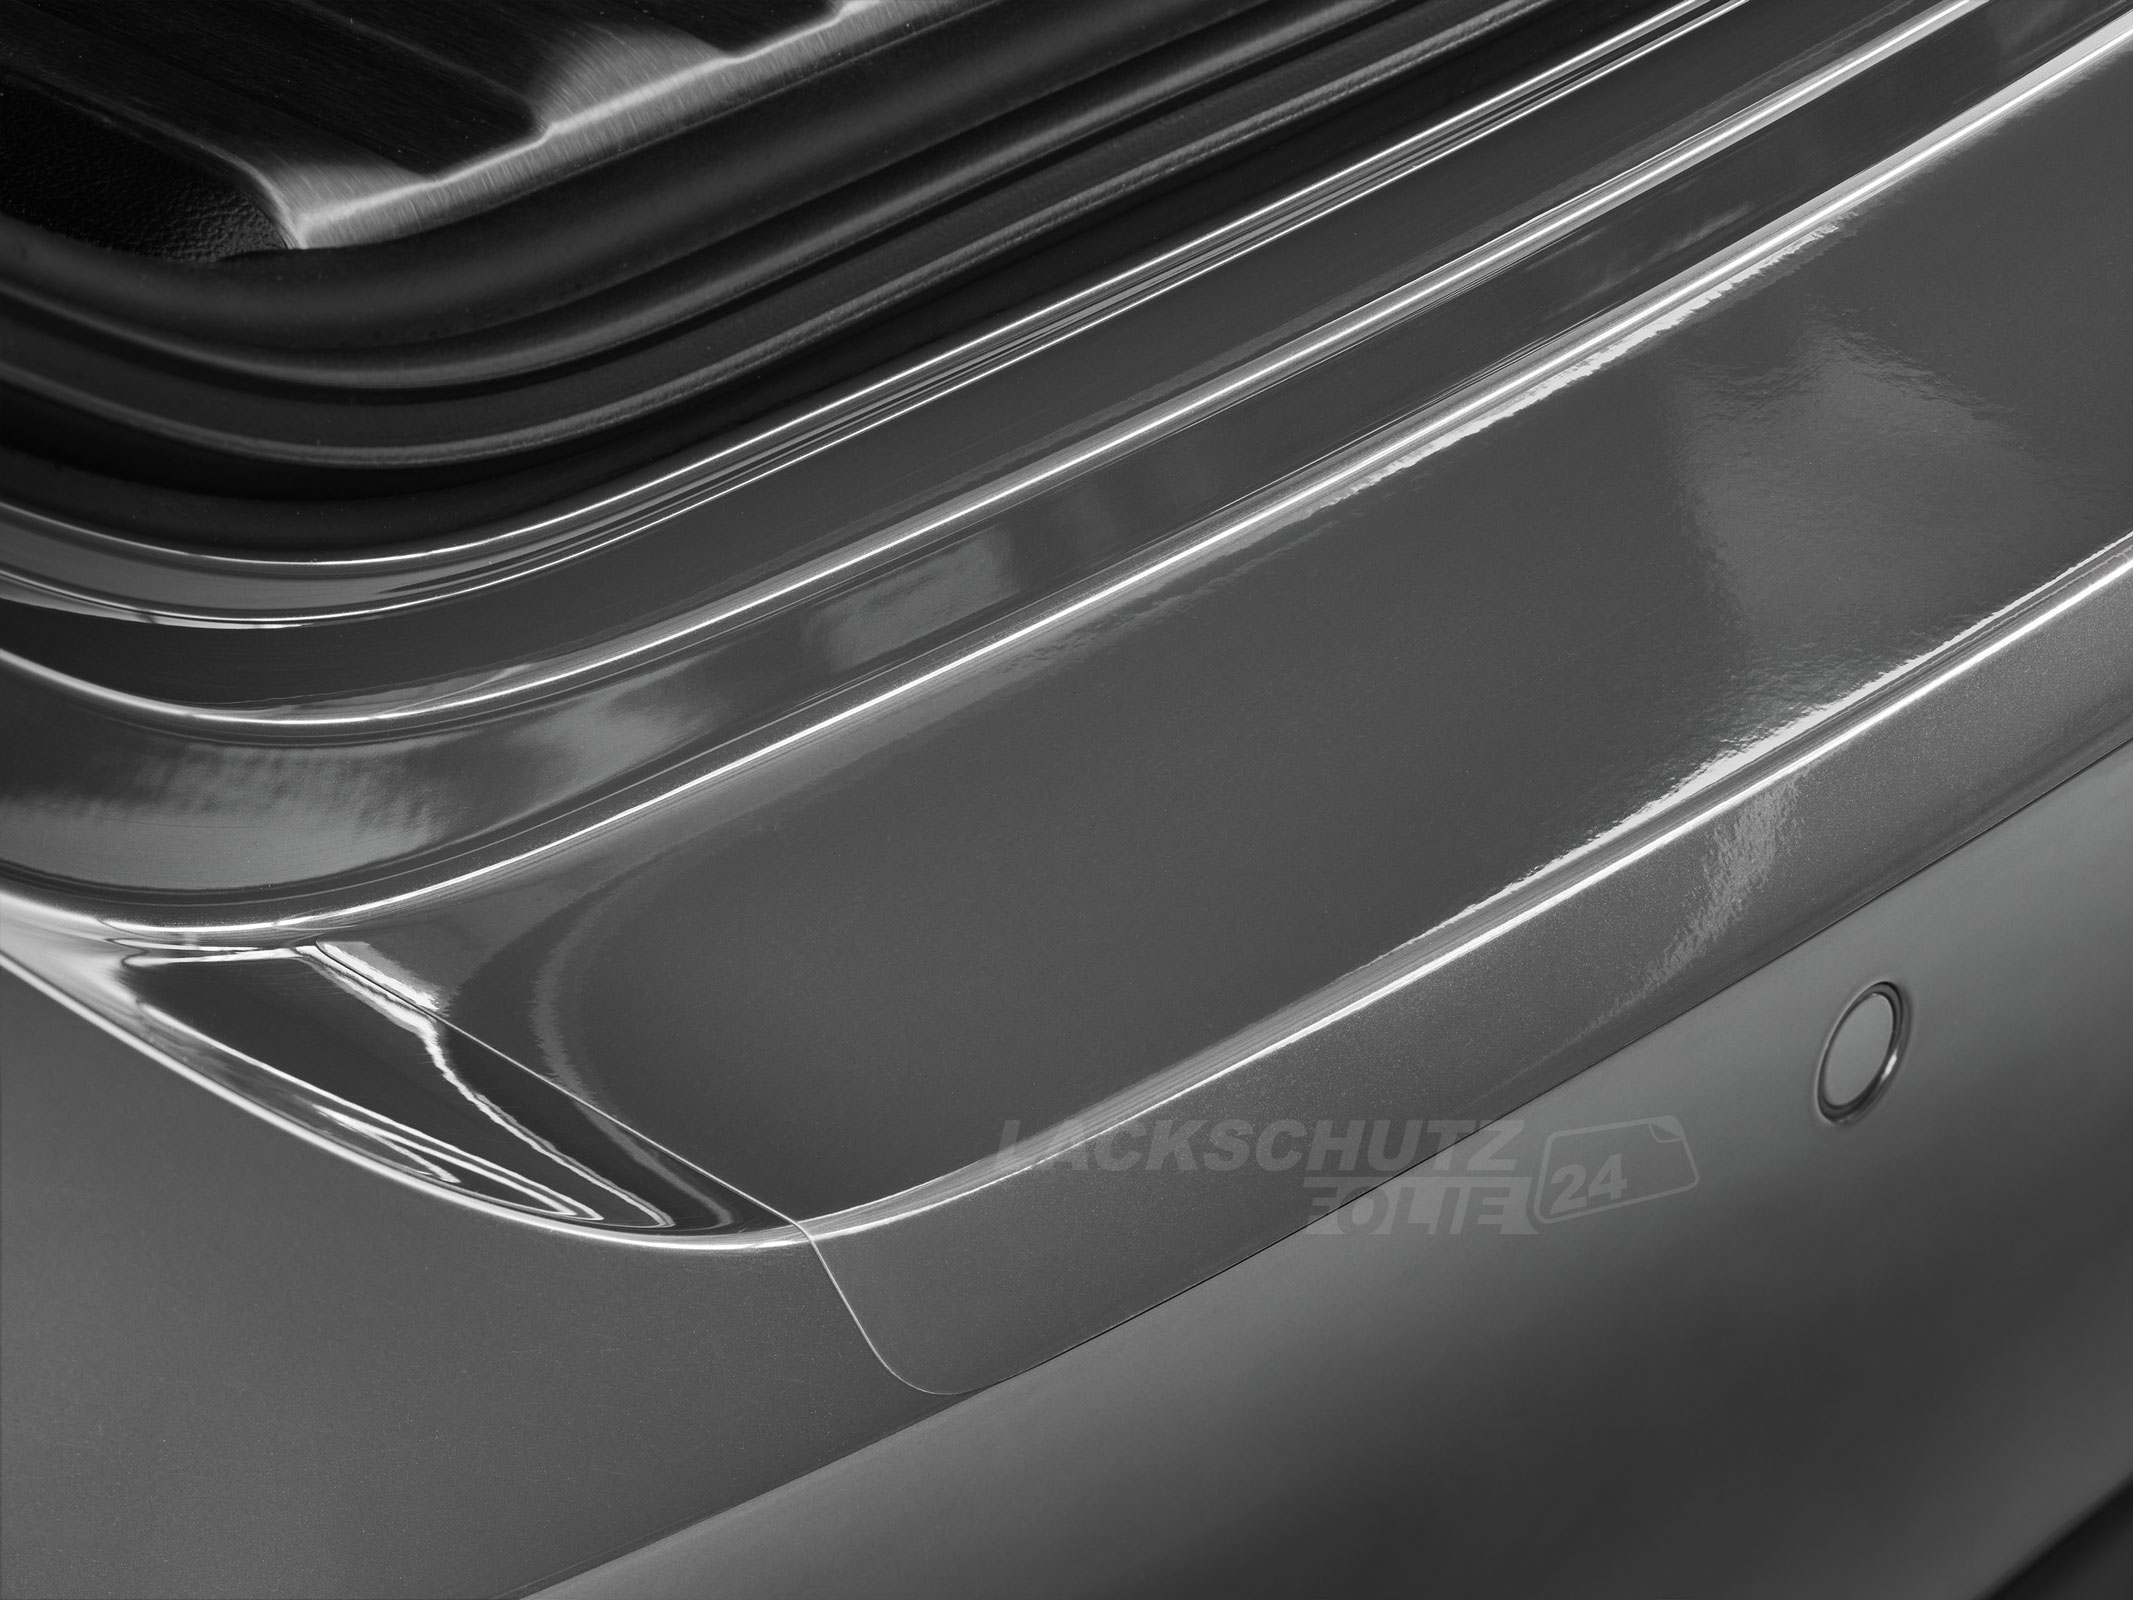 Ladekantenschutzfolie - Transparent Glatt Hochglänzend 150 µm stark für BMW 5er Limousine Typ F10, BJ 2010-02/2017